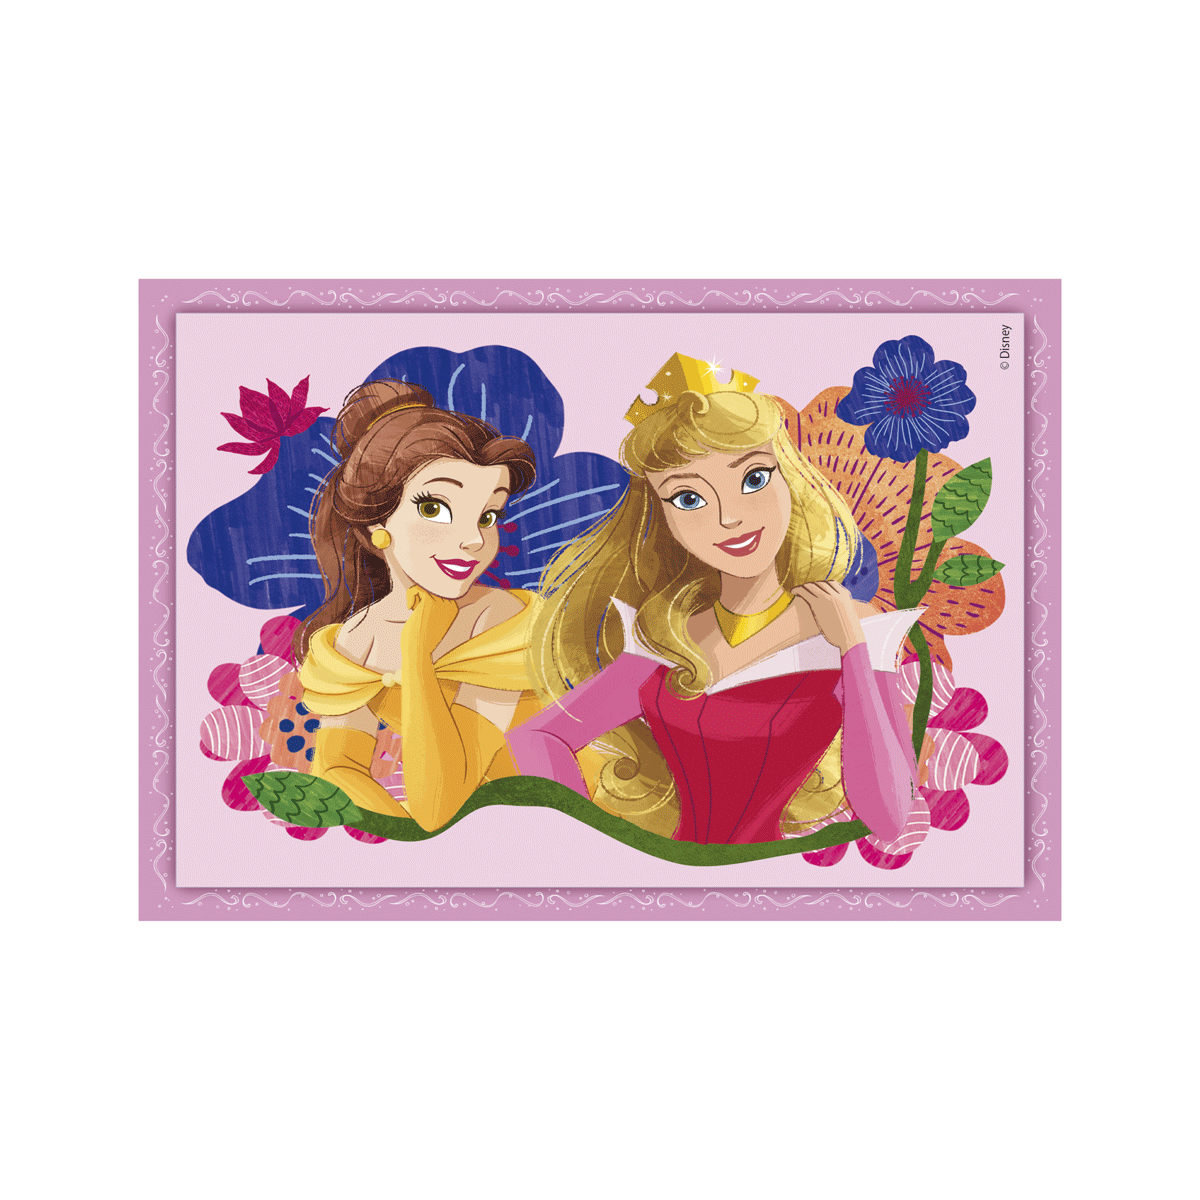 Clementoni supercolor puzzle disney princess - 1x12 + 1x16 + 1x20 + 1x24 pezzi, puzzle bambini 3 anni - CLEMENTONI, DISNEY PRINCESS